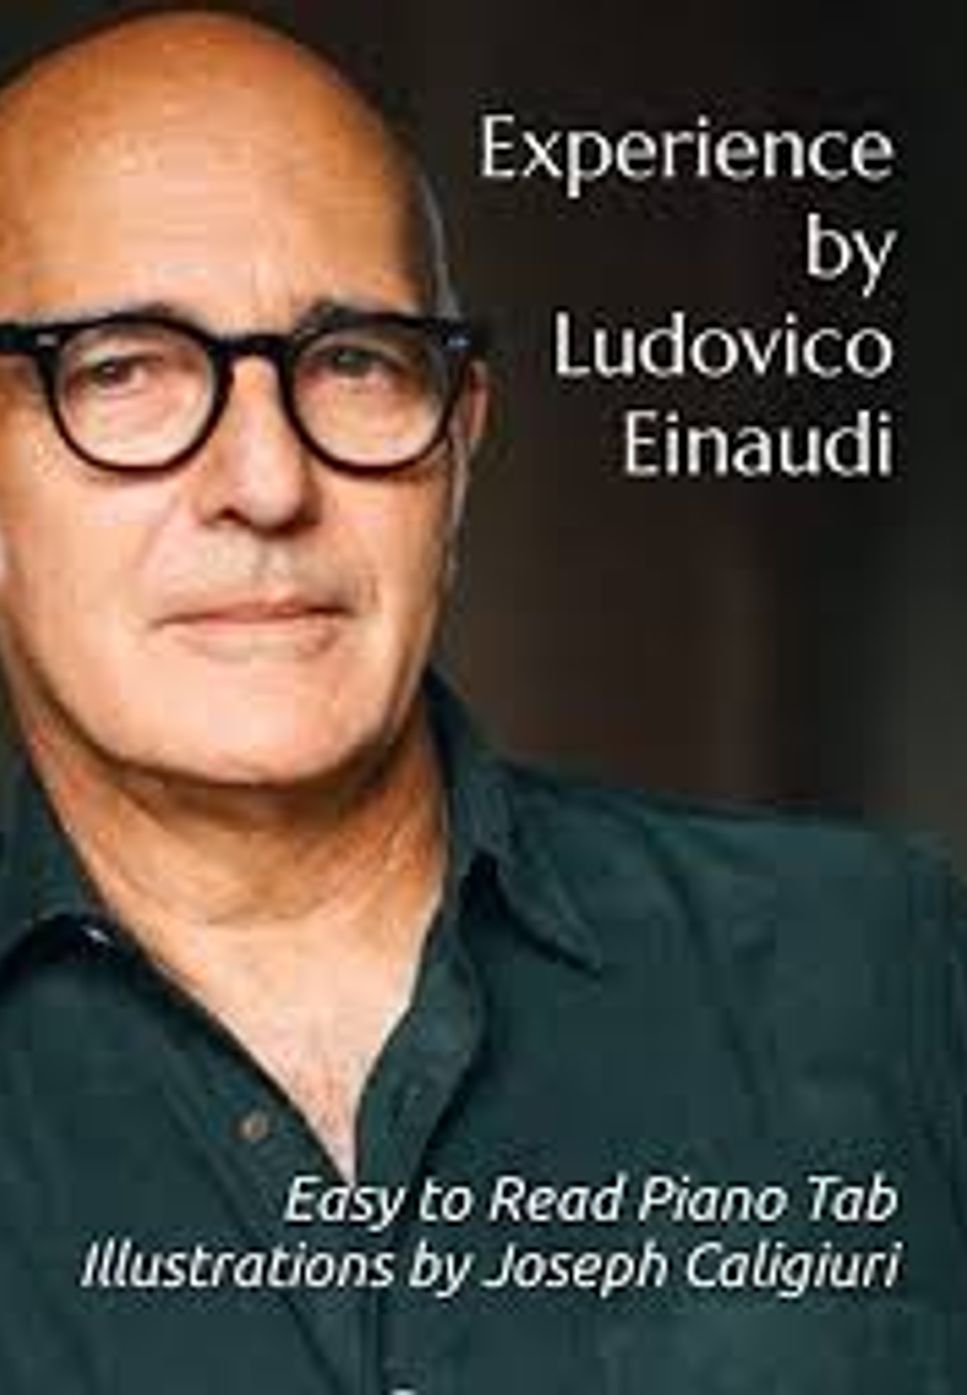 Ludovico Einaudi - Experience - Ludovico Einaudi (https://www.youtube.com/watch?v=WzXtN32UNyY) by Helin Sentürk